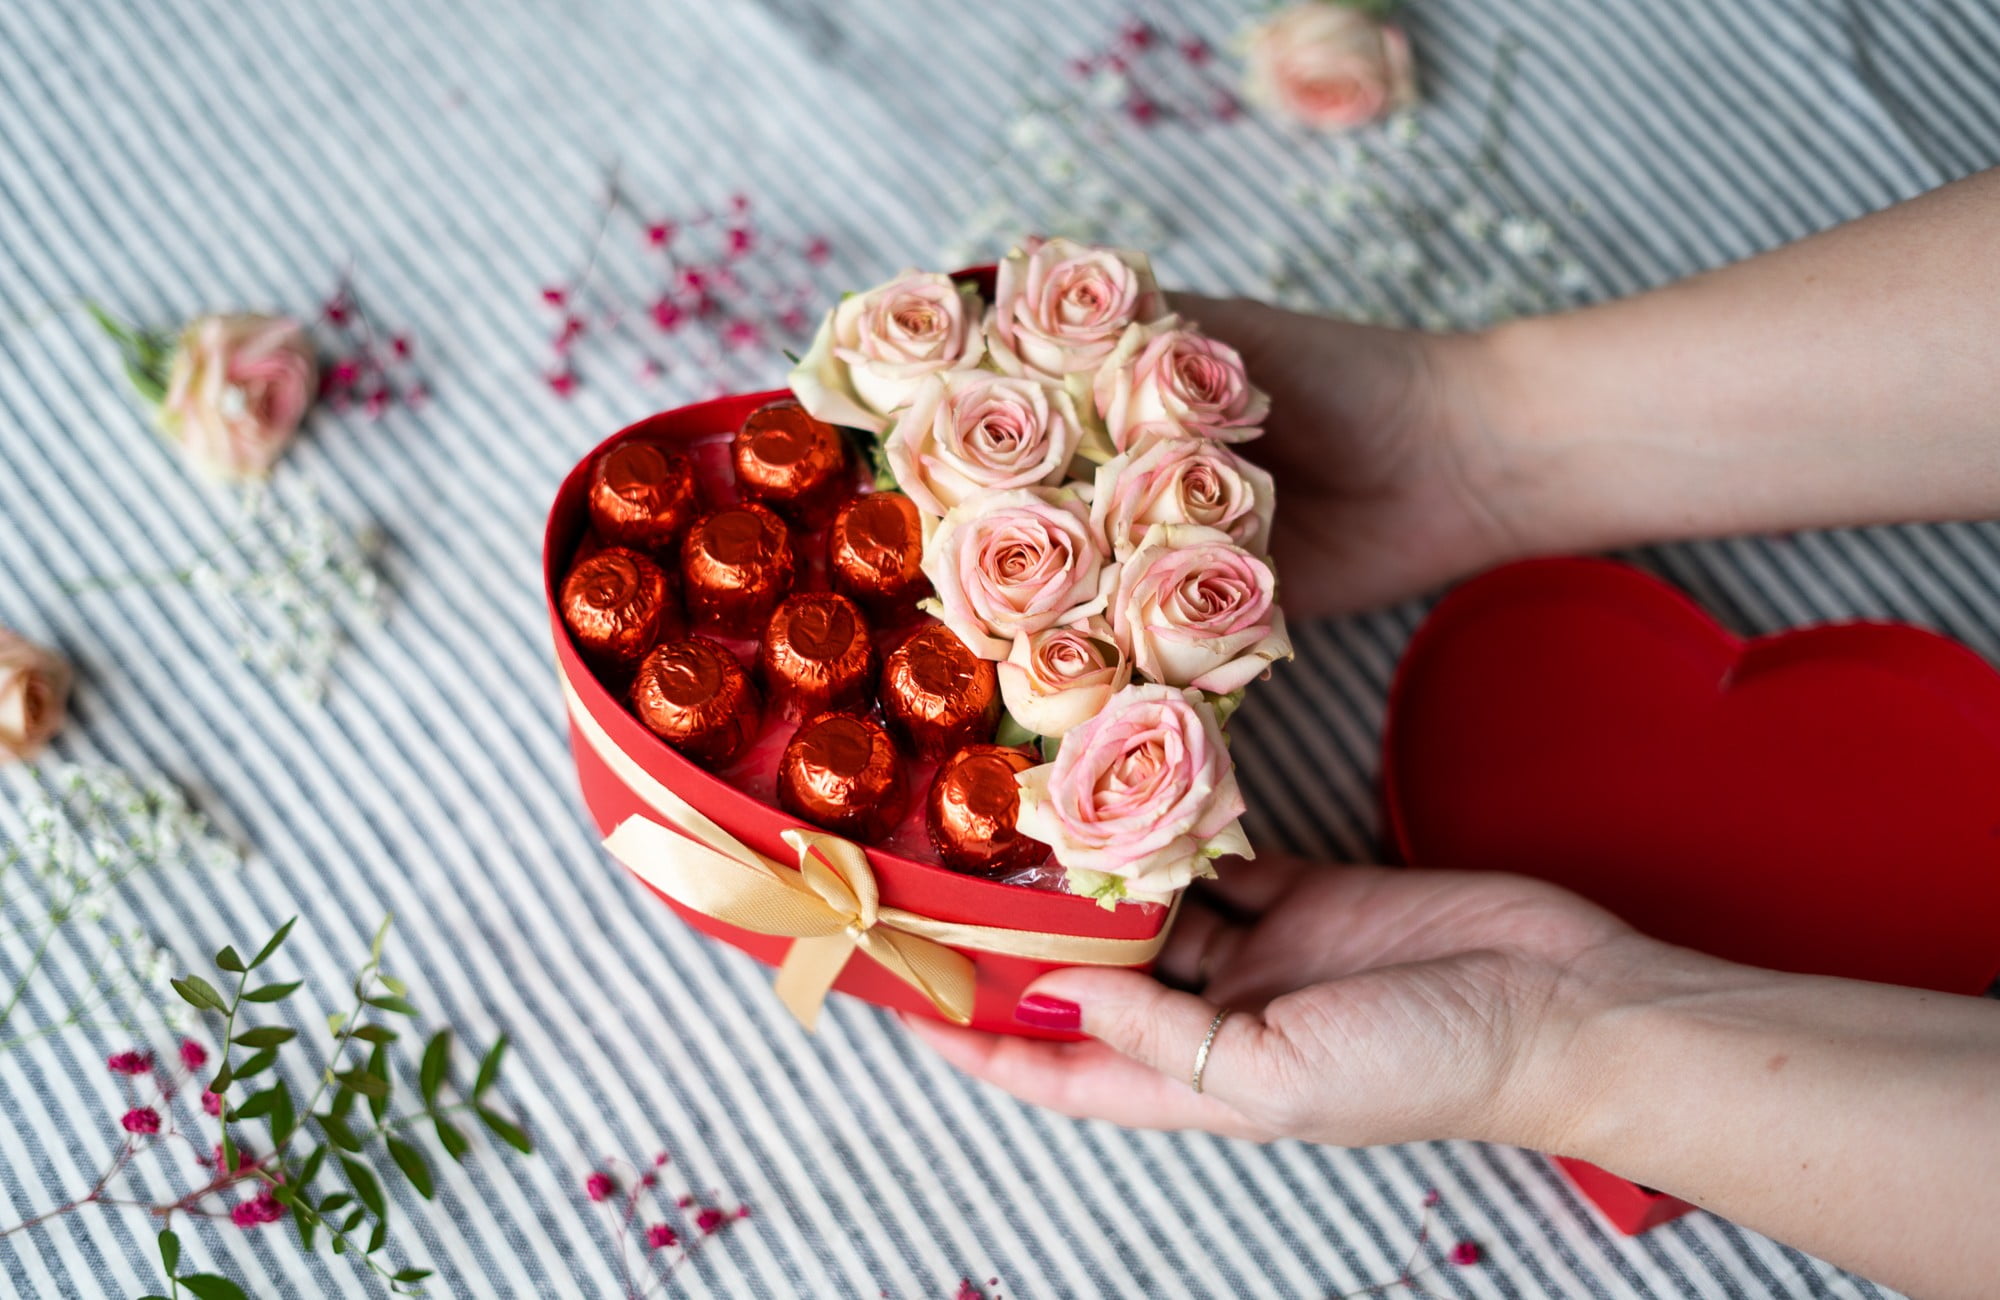 Csokoládé és virág szív alakban elrendezve - eredeti ajándék anyáknak.